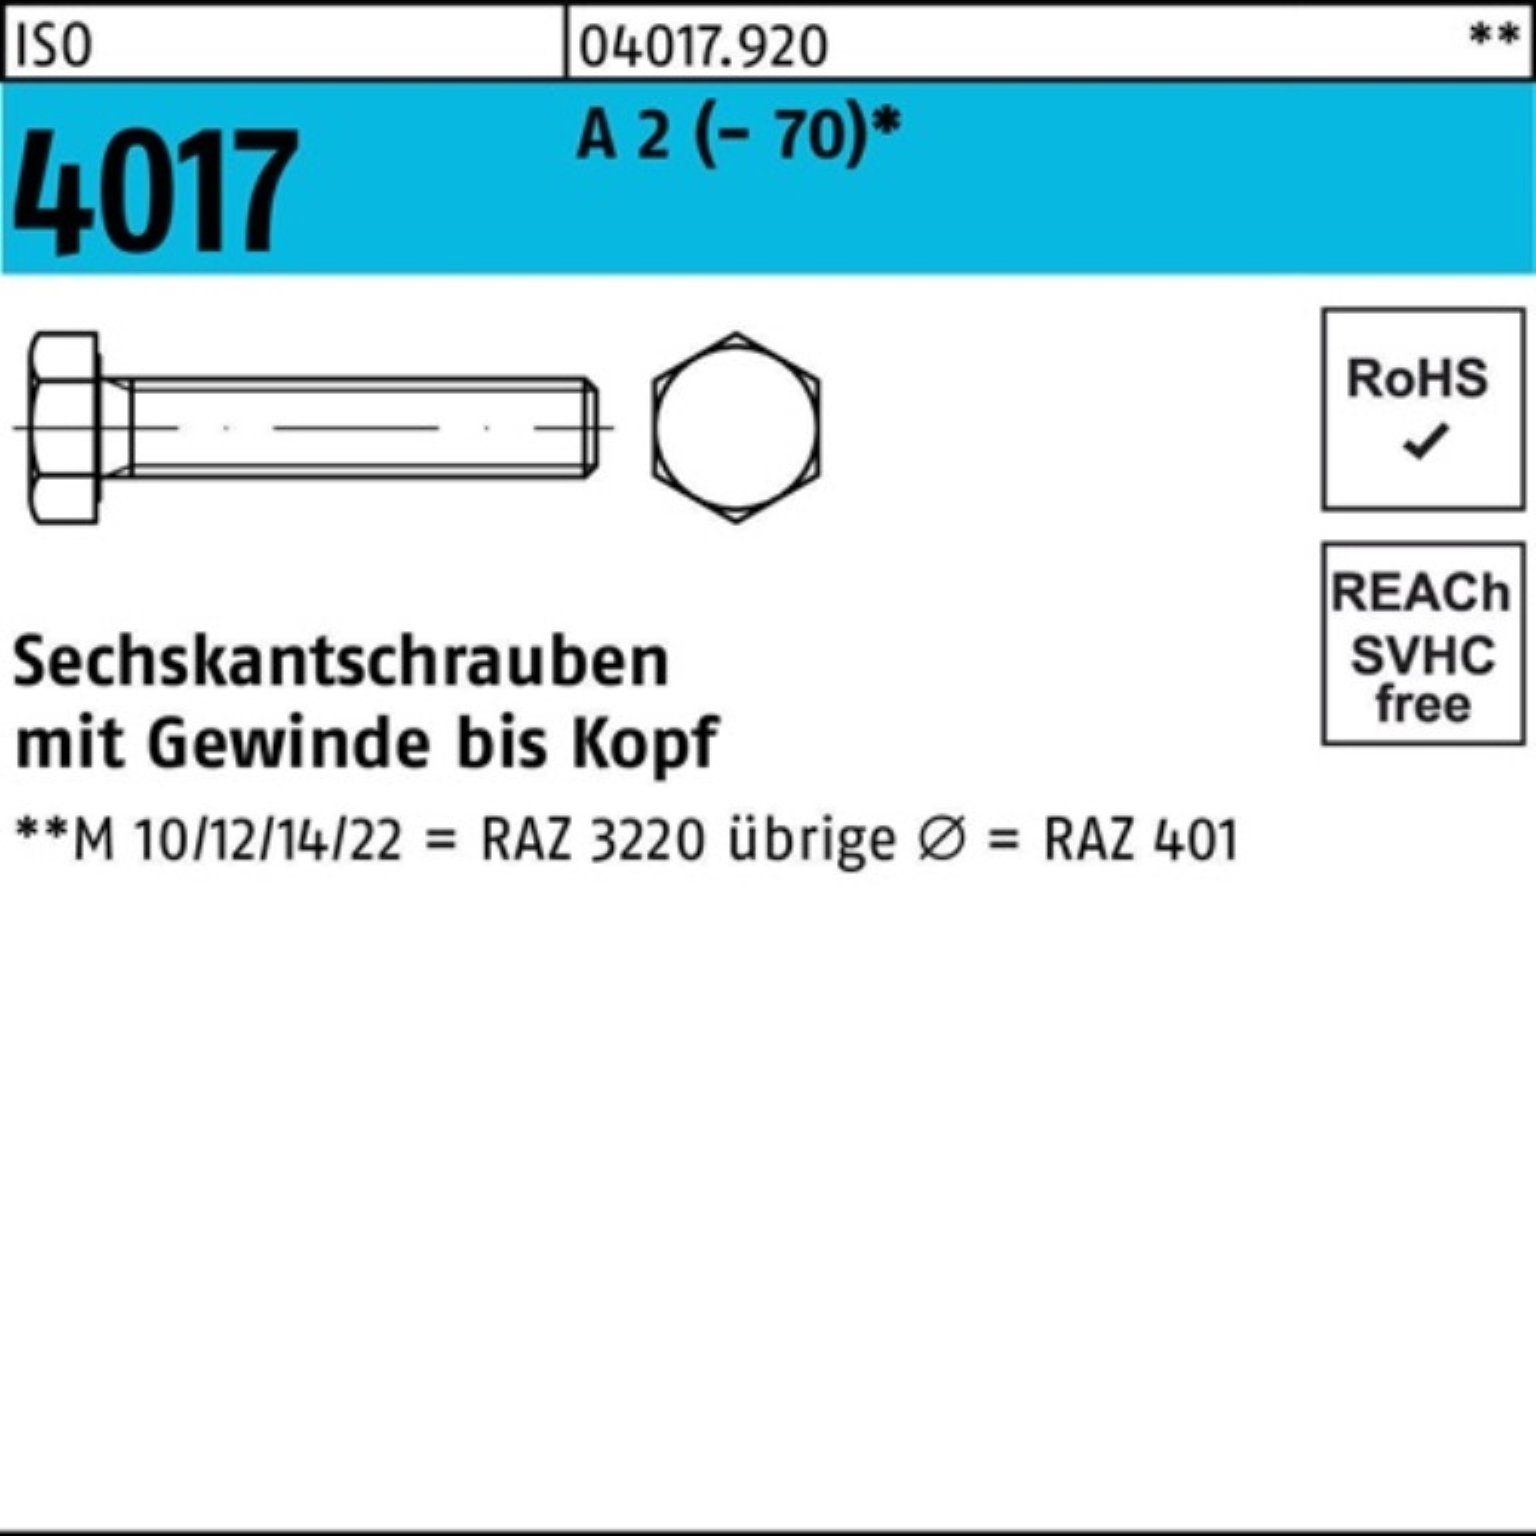 Bufab Sechskantschraube 100er Pack Sechskantschraube ISO 4017 VG M14x 50 A 2 (70) 50 Stück